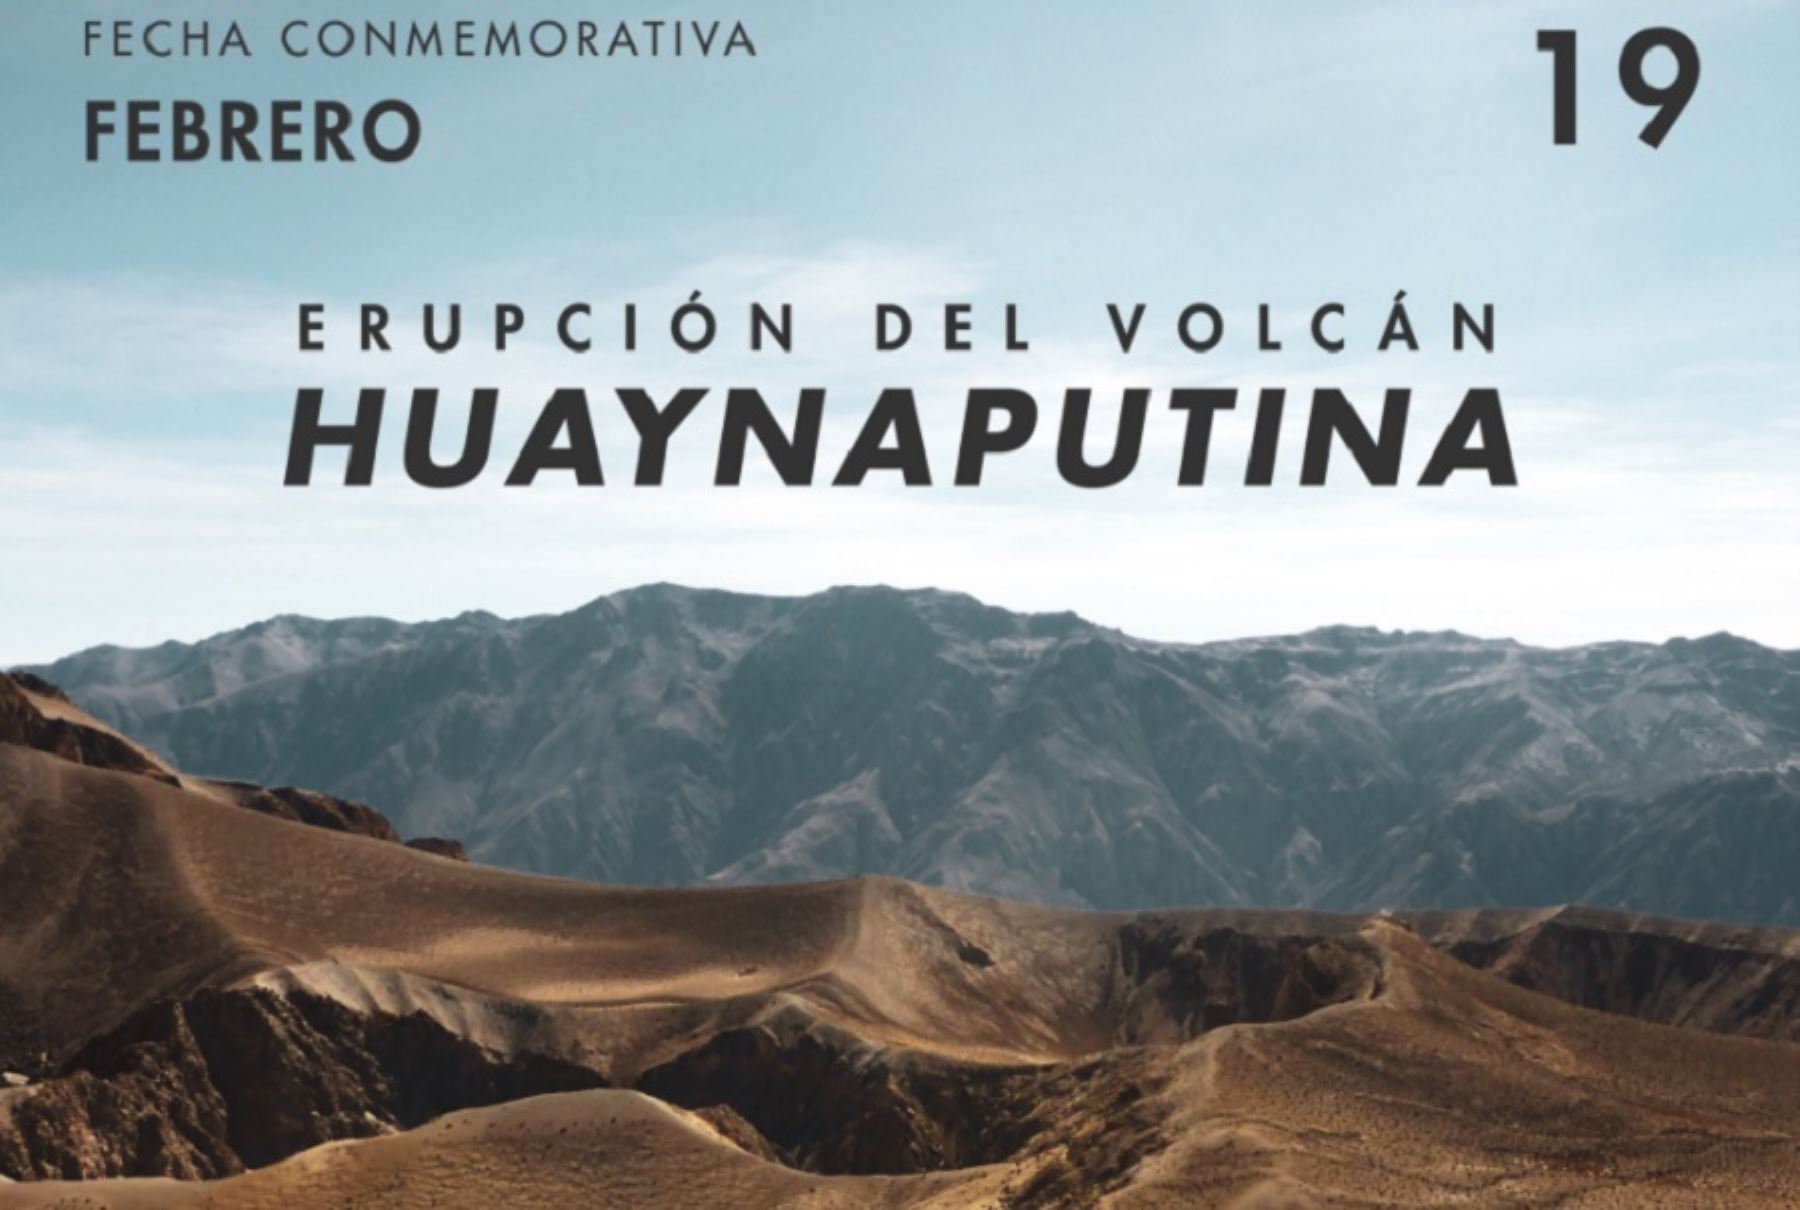 Un día como hoy, el 19 de febrero de 1600, el volcán Huaynaputina, ubicado en la región Moquegua, desencadenó la que es considerada hasta la fecha como la erupción volcánica más grande de la historia en Latinoamérica.